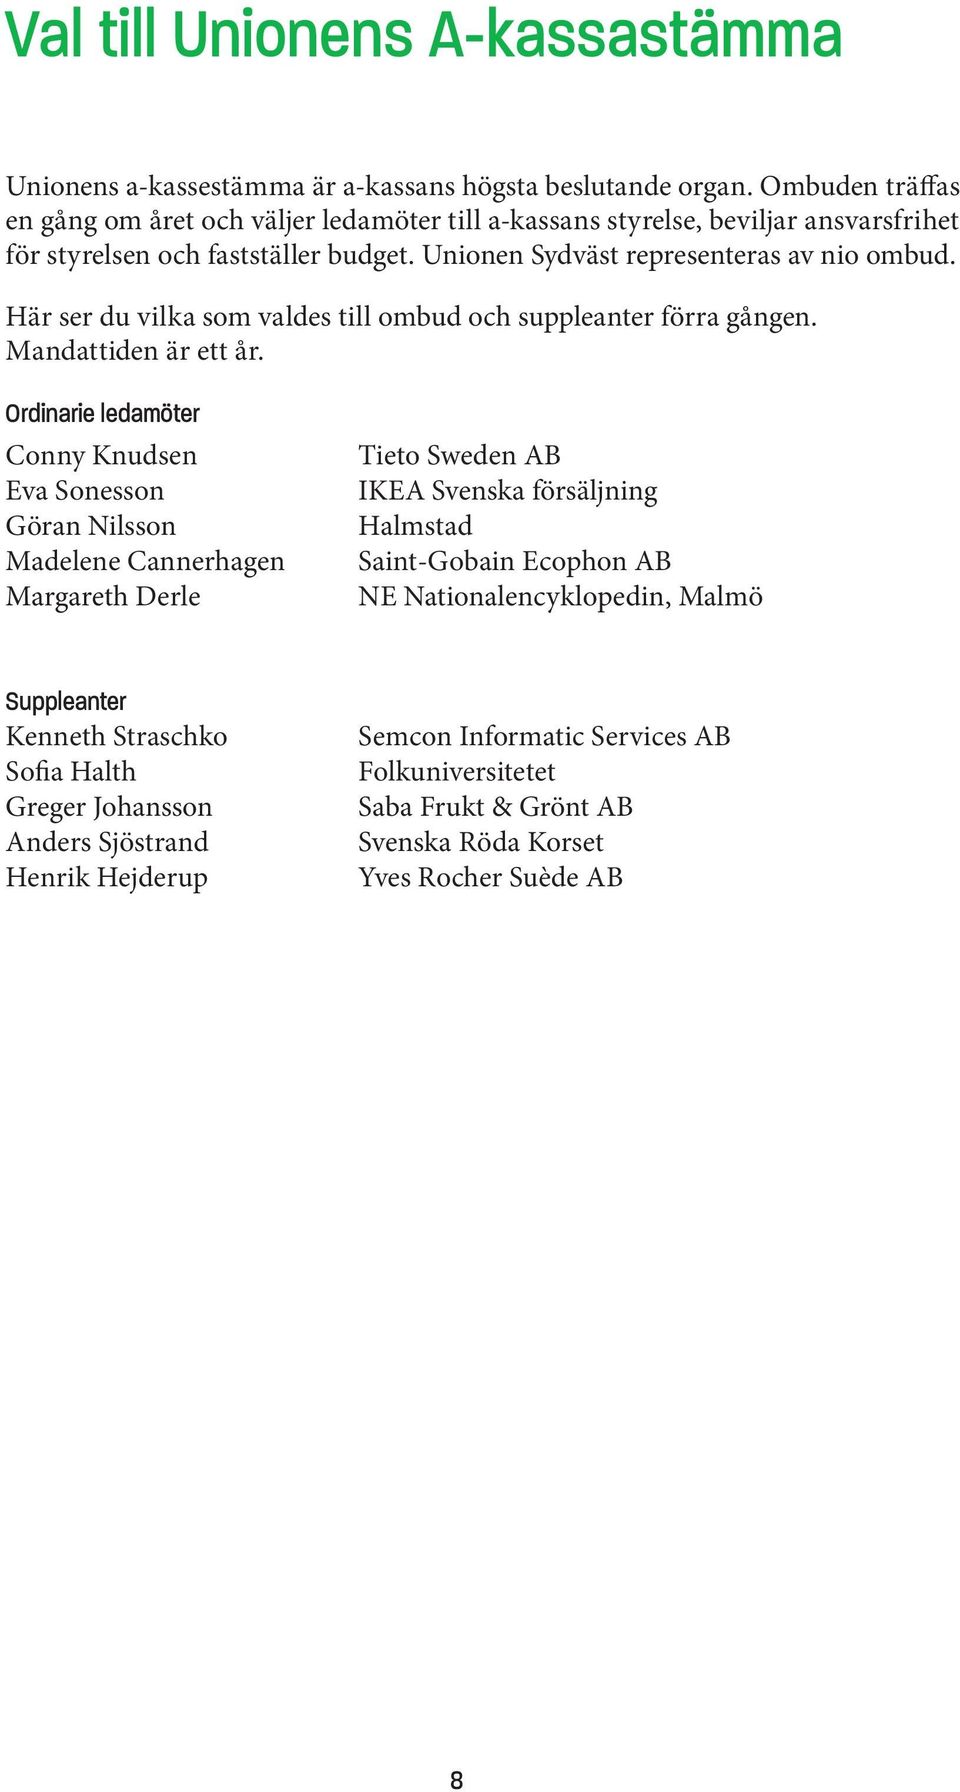 Här ser du vilka som valdes till ombud och suppleanter förra gången. Mandattiden är ett år.